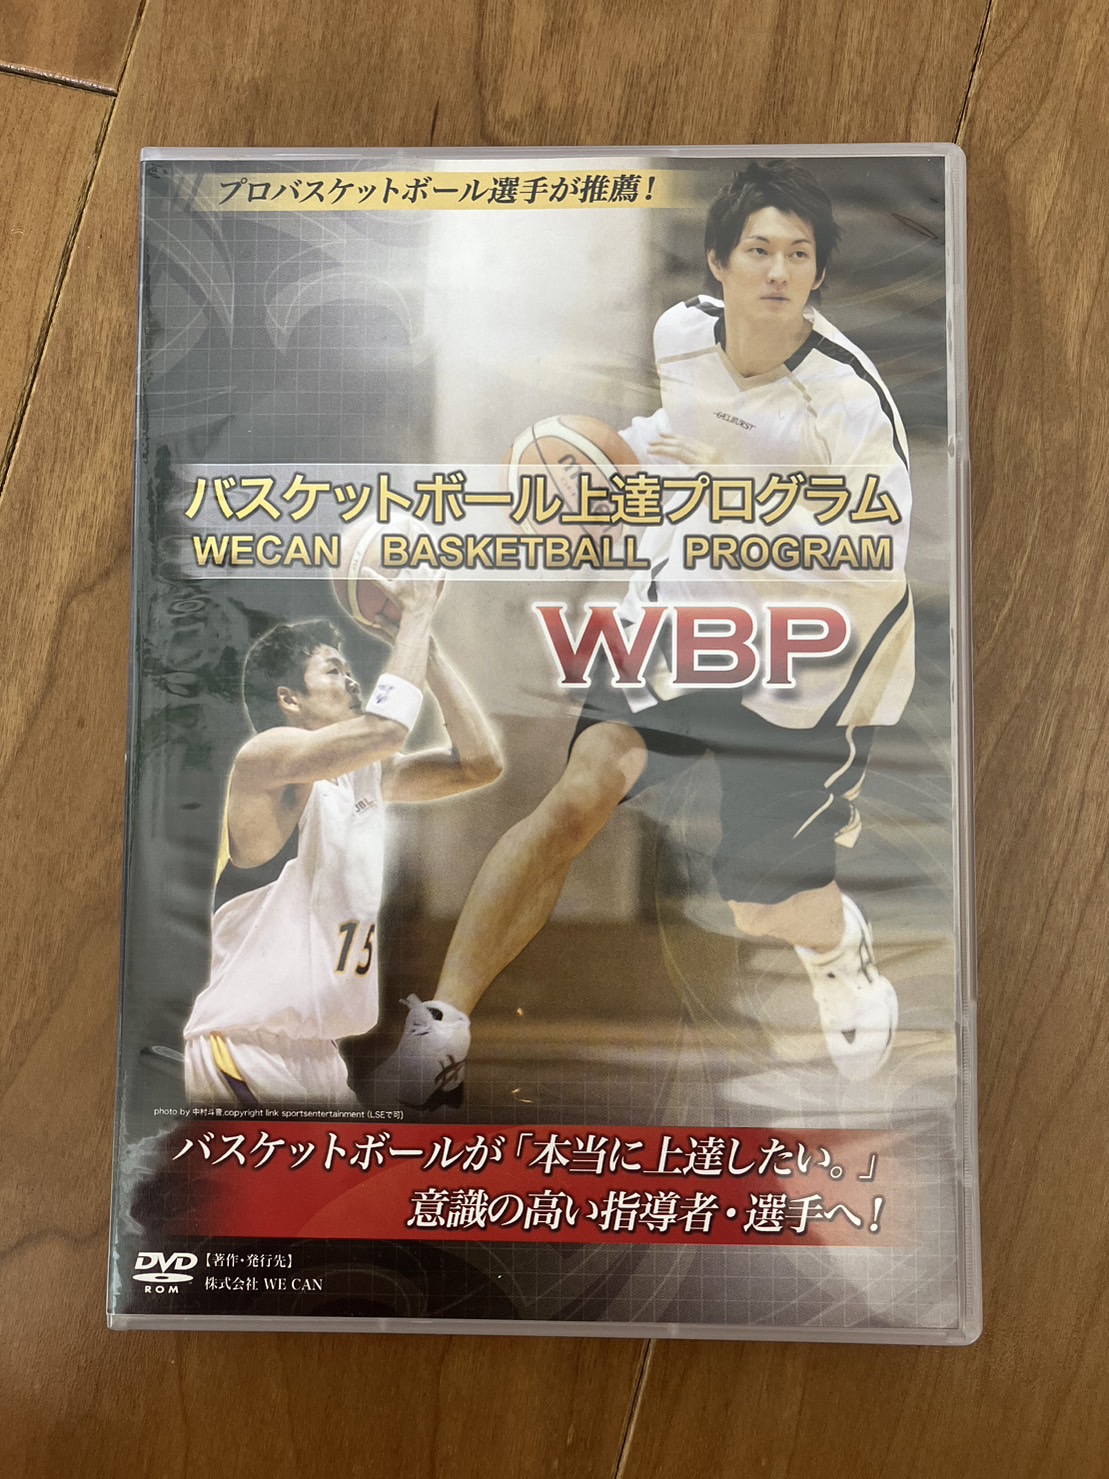 Kobe【韓国バスケ】マッチアップゾーン 方烈 バスケ 指導 DVD